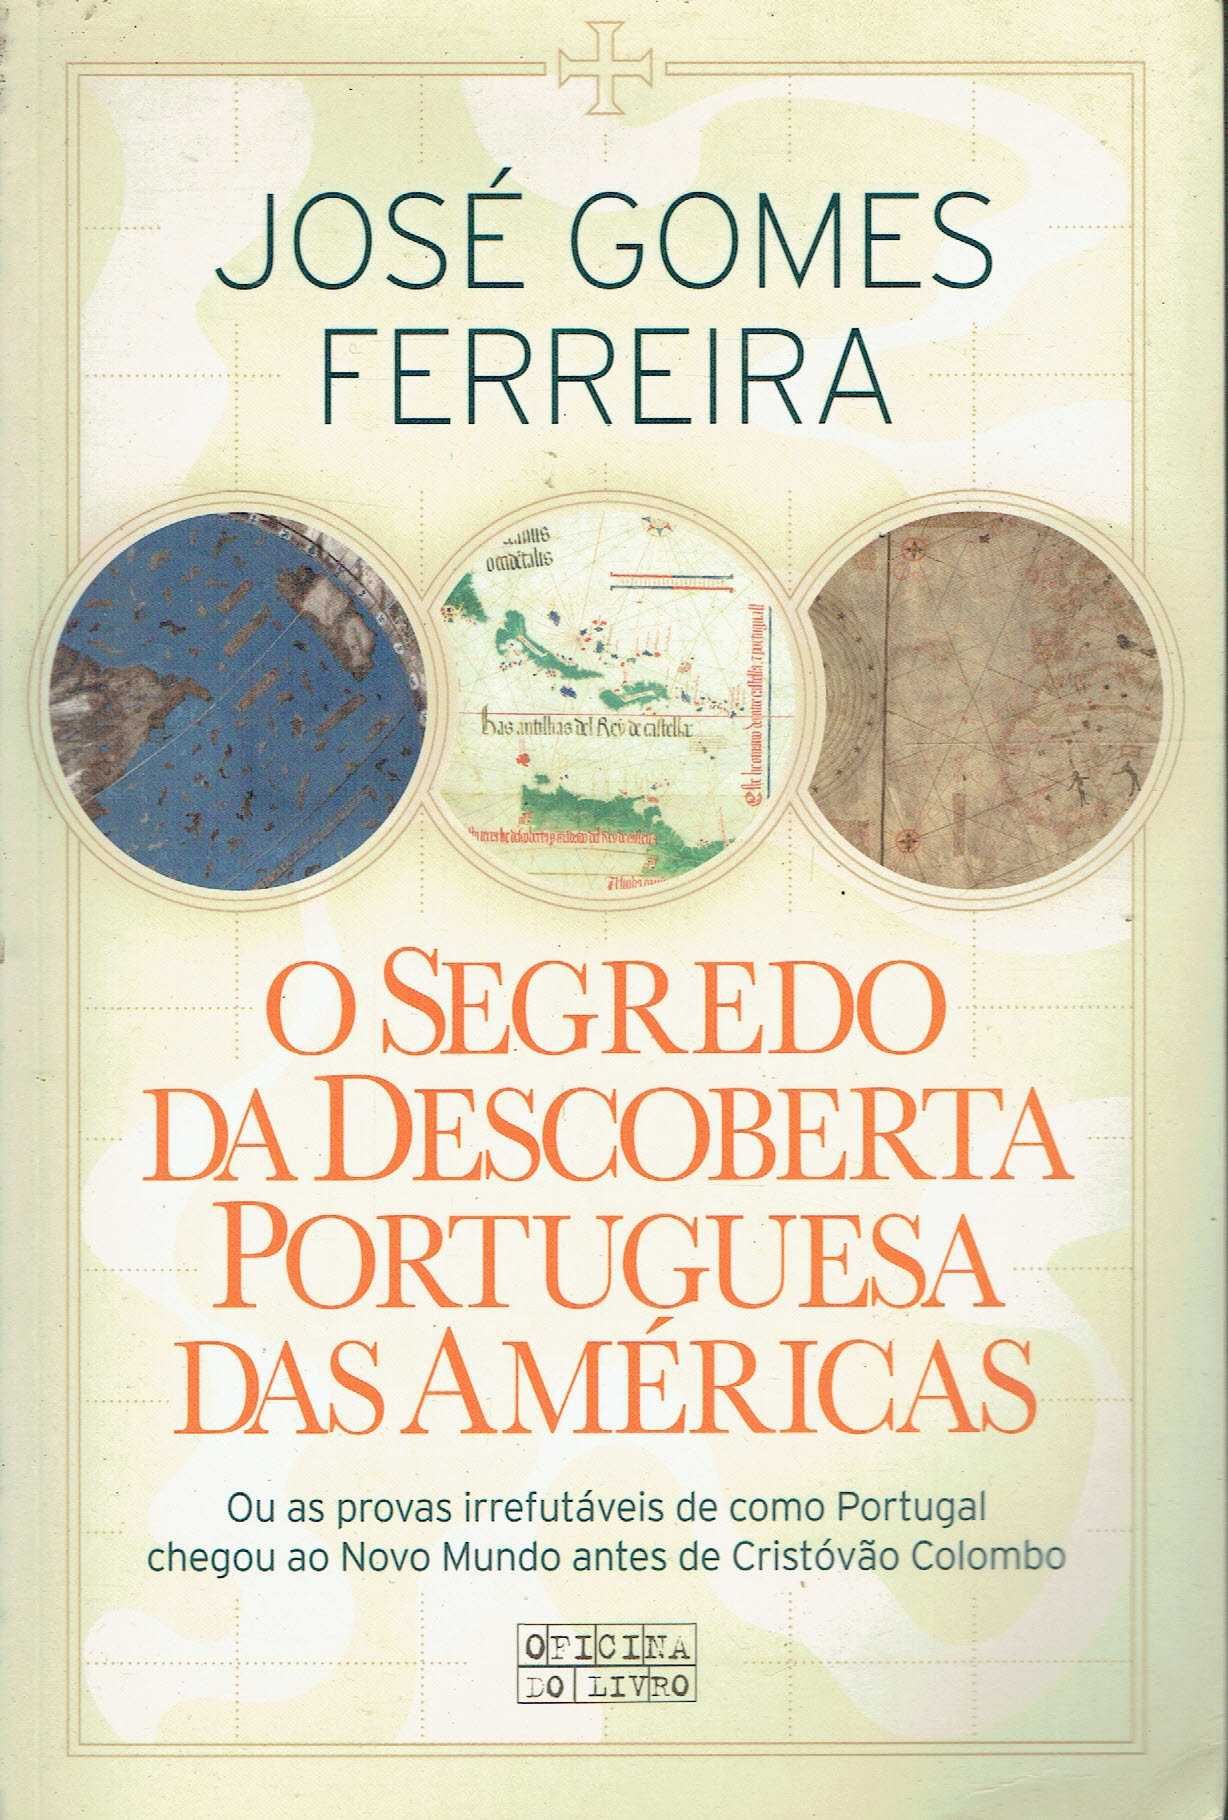 15395
O Segredo da Descoberta Port. das Américas
José Gomes Ferreira